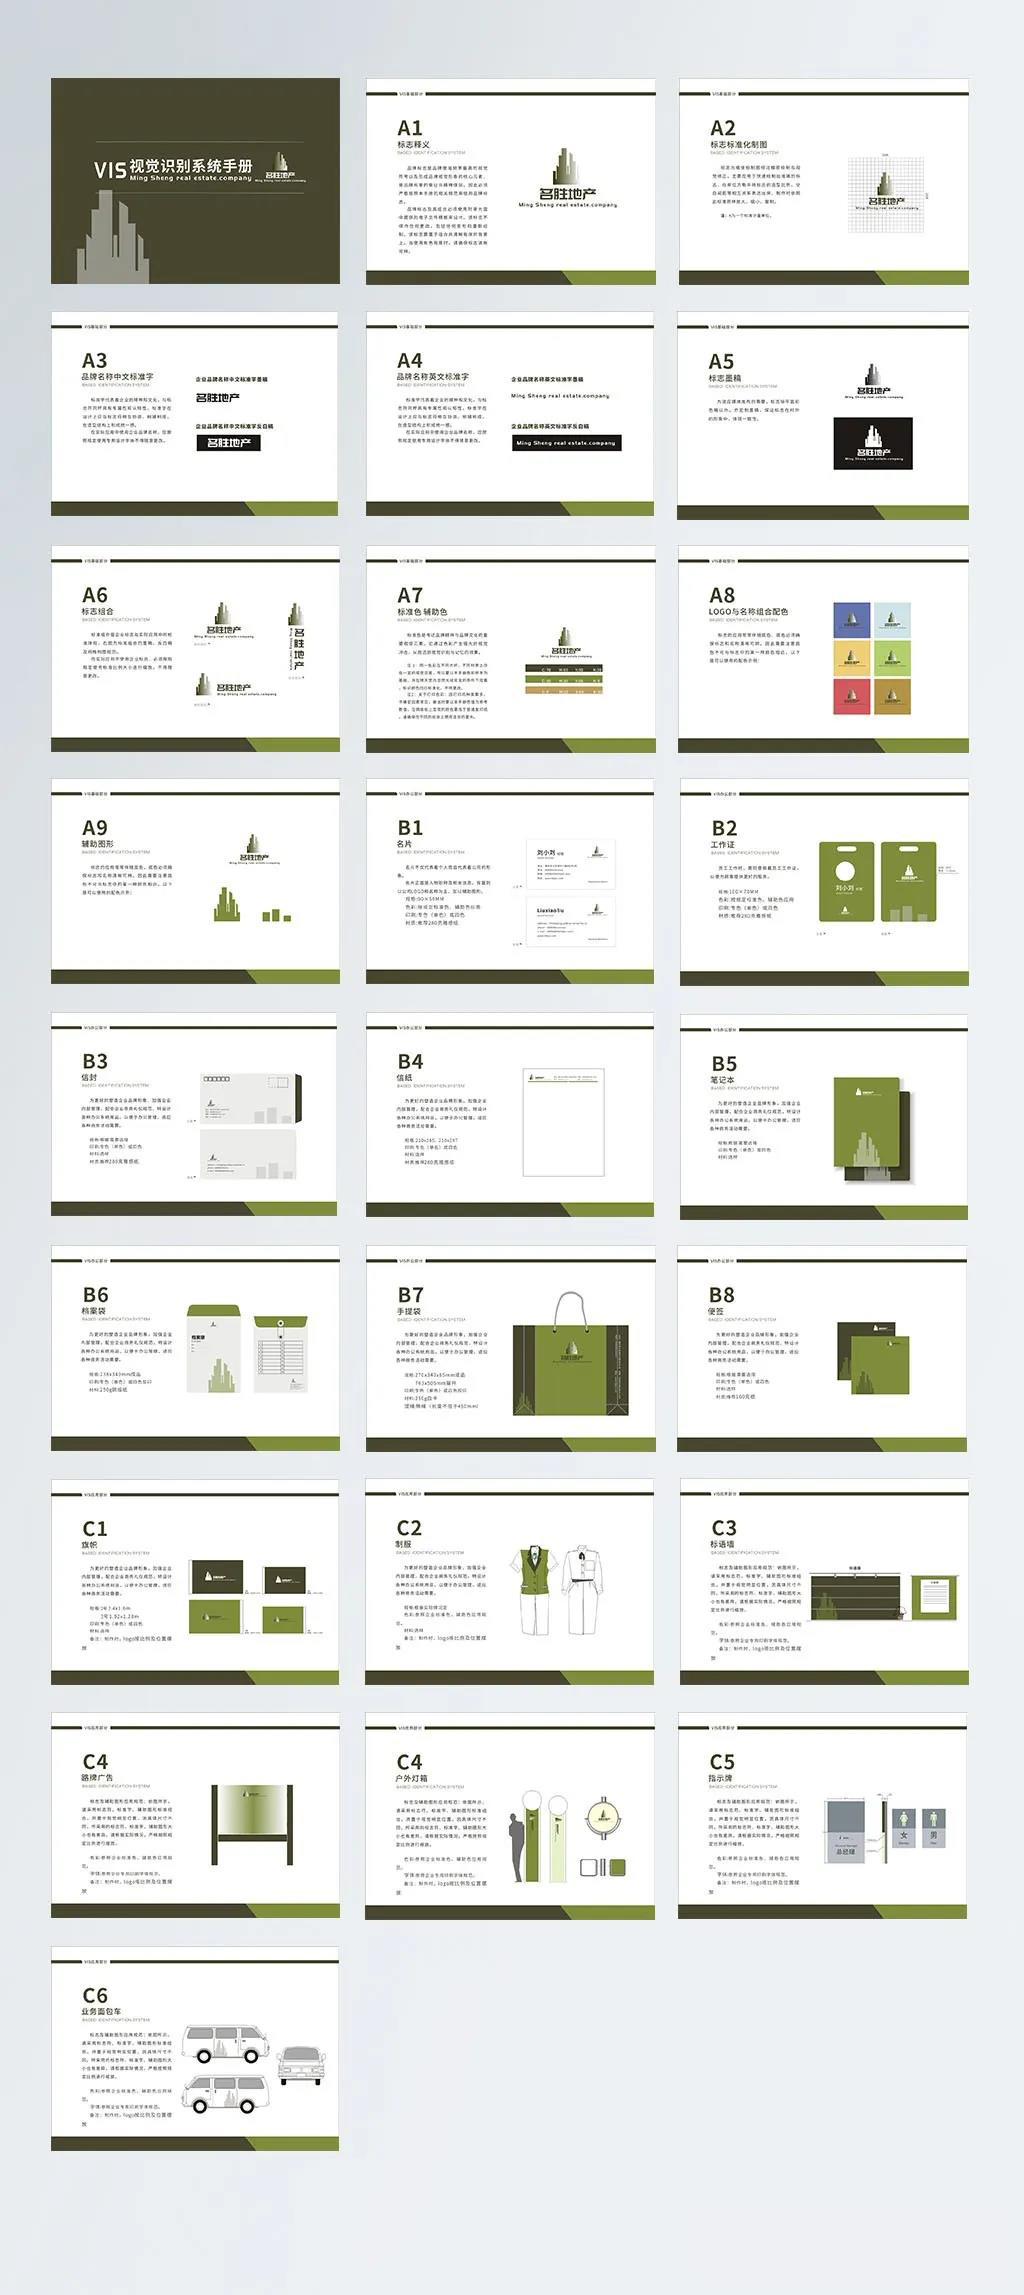 82套公司企业品牌VI视觉标识设计合集，AI/ID/CDR格式，全套手册毕业作品模板 图片素材 第3张